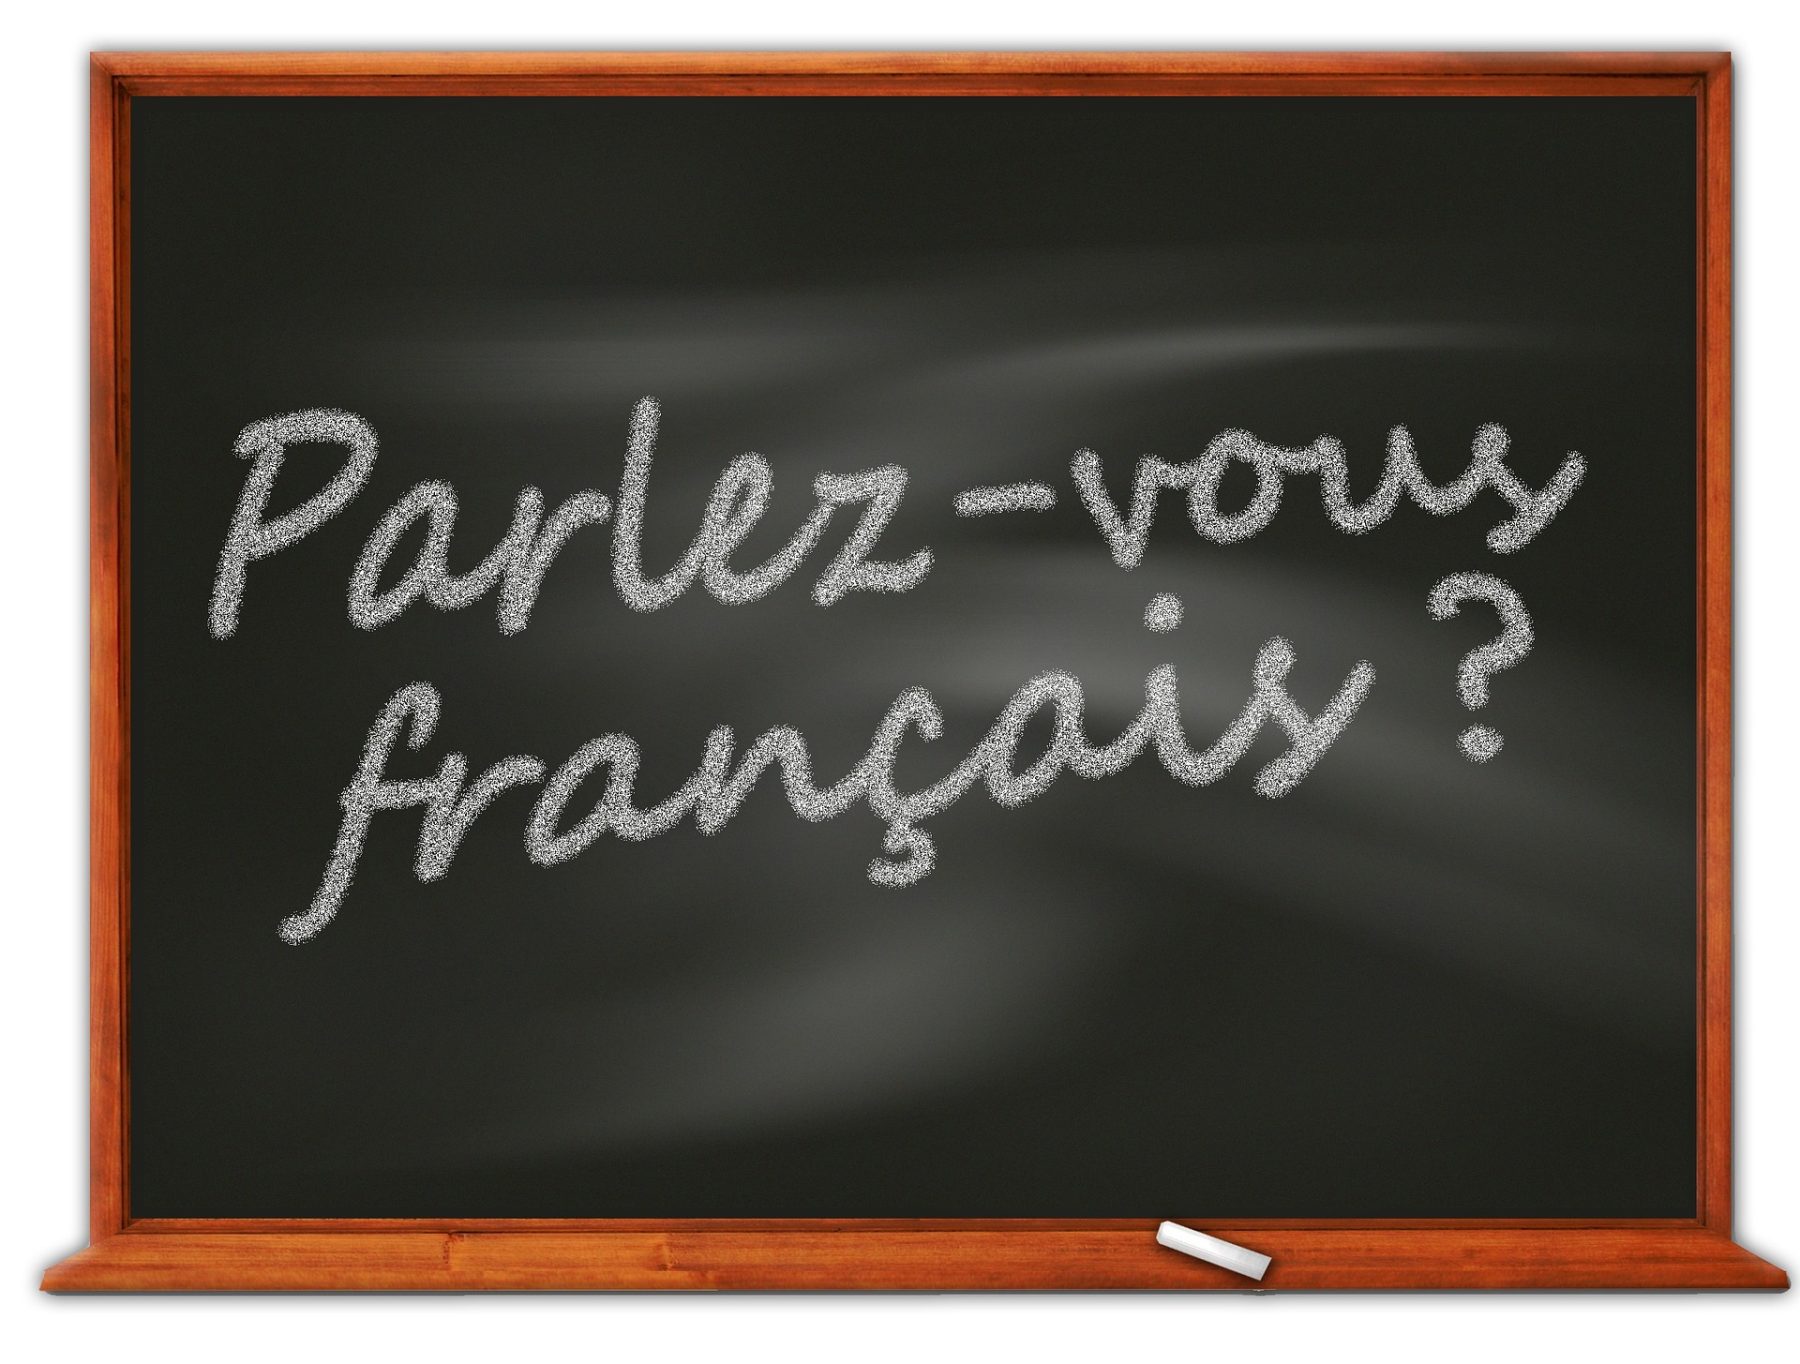 Les Flamands et la langue française: entre désamour et aveu de faiblesse